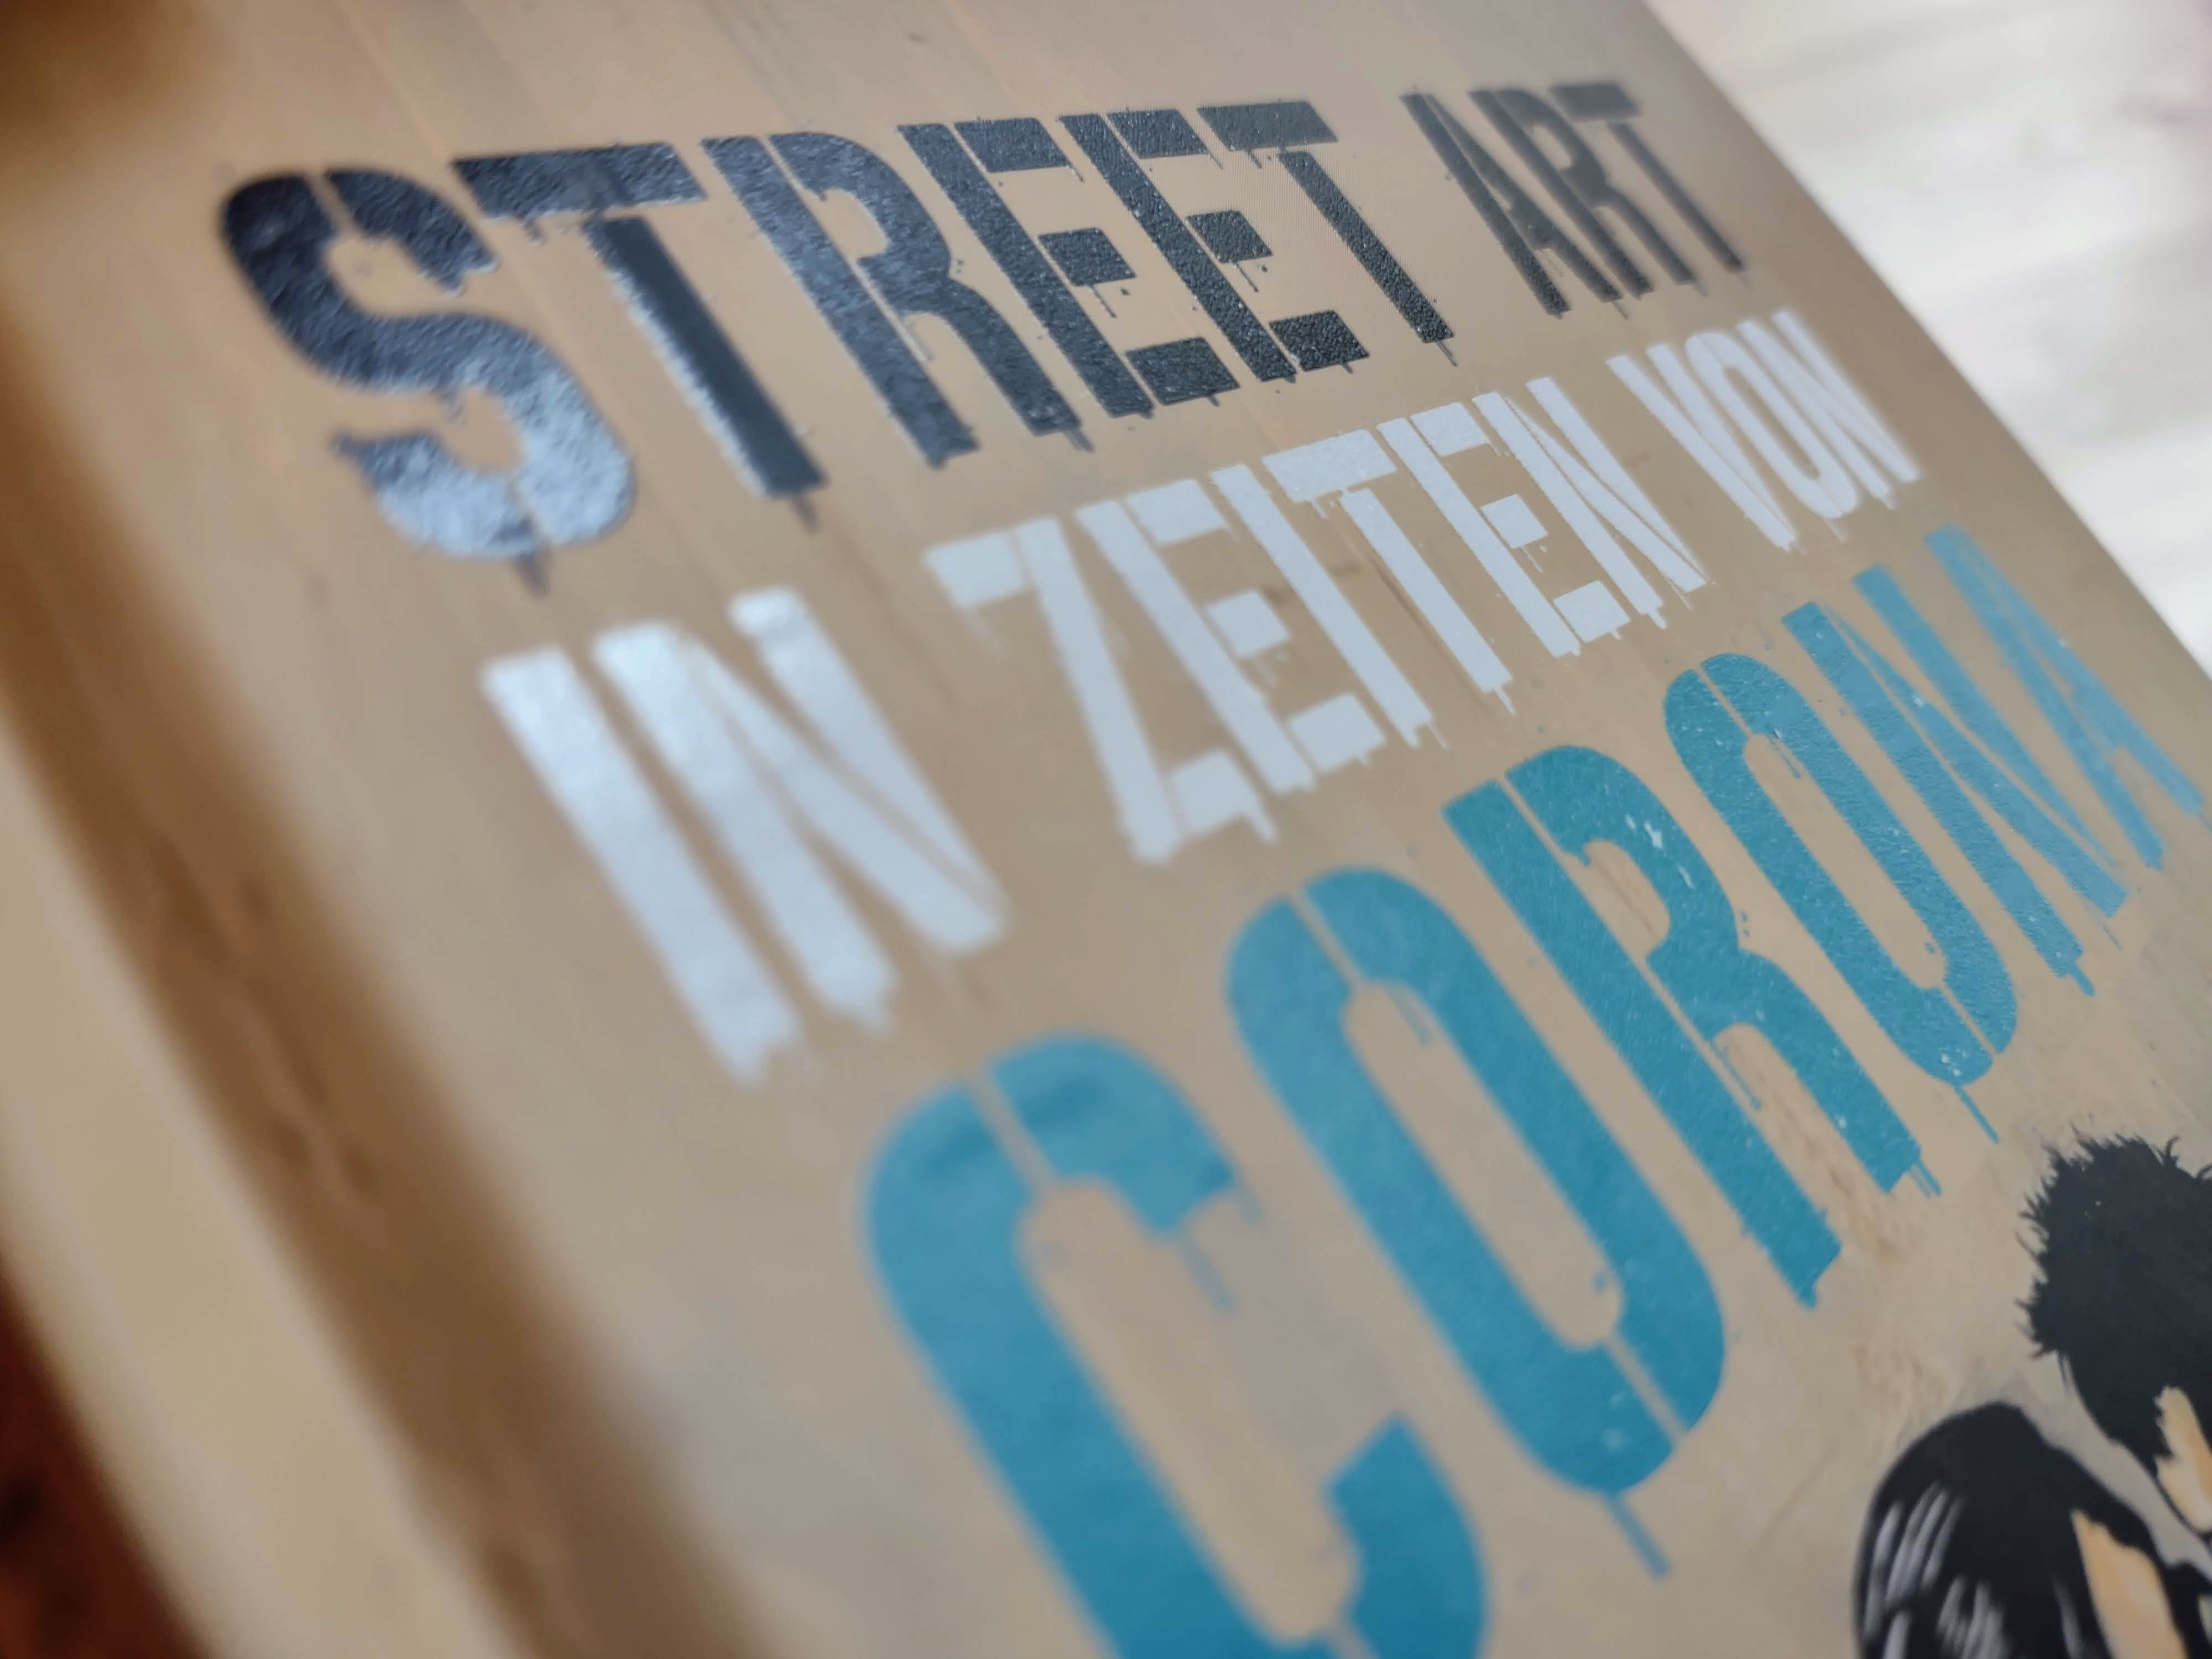 STREET ART IN ZEITEN VON CORONA | Literaturtipp